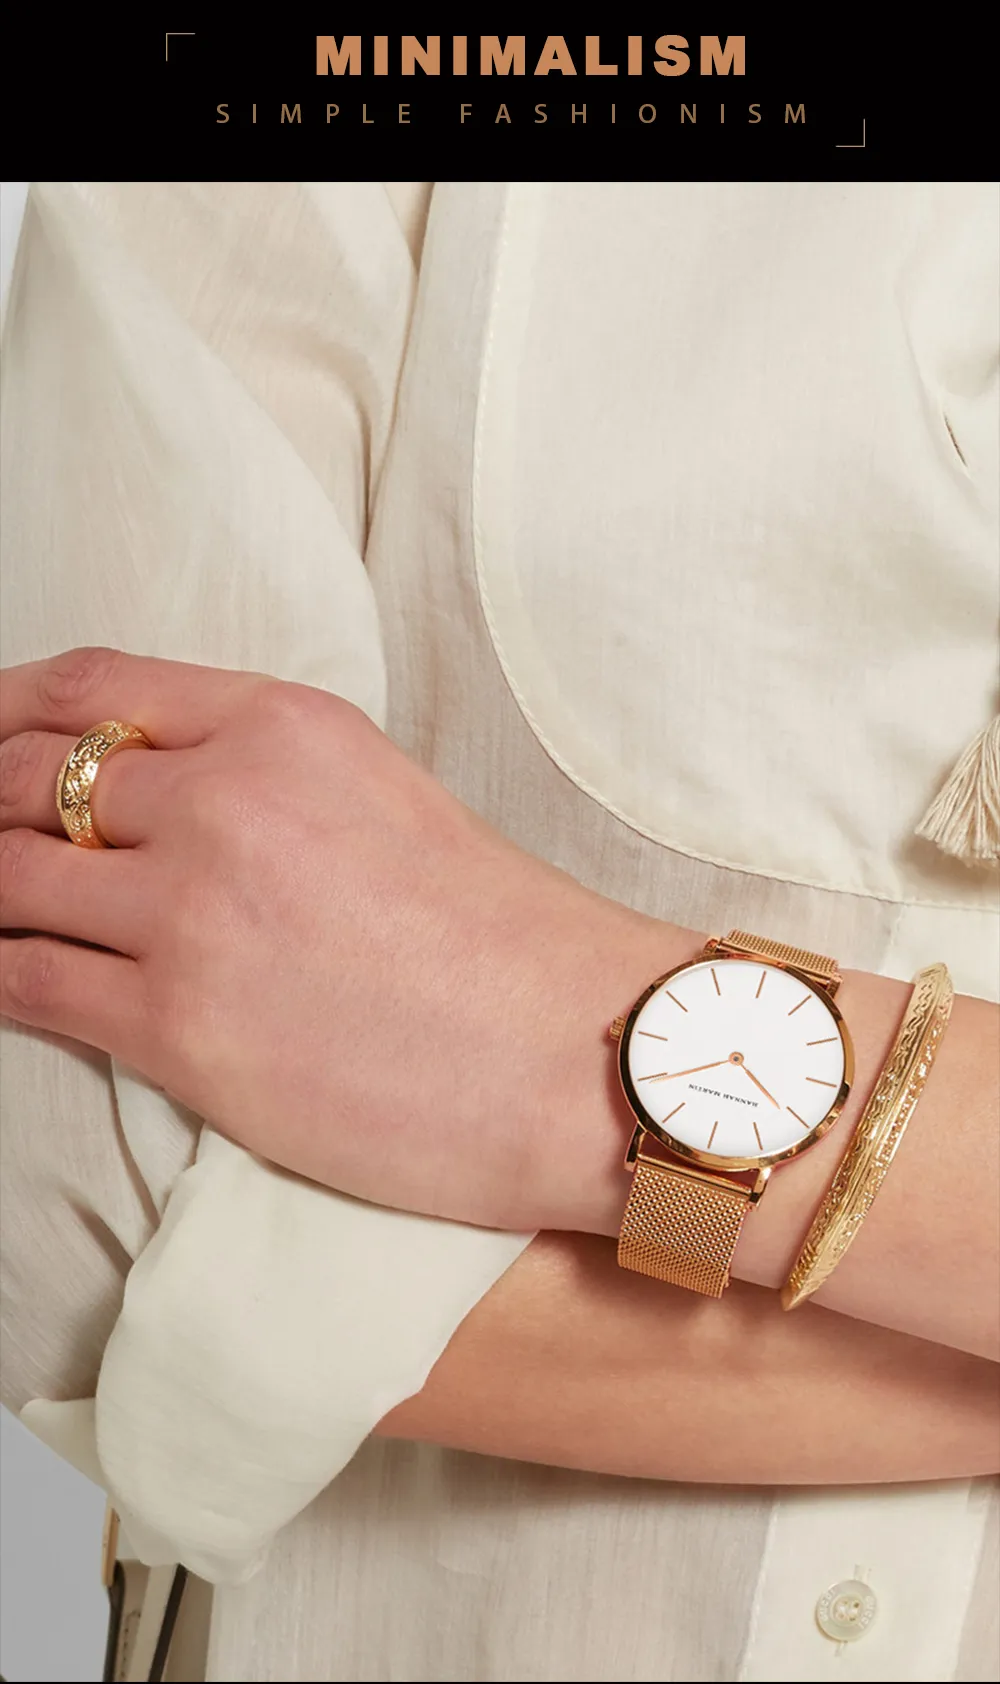 2021 Relogio feminino Hannah Martin luksusowa marka kobiet zegarki ze stali nierdzewnej siatka różowe złoto wodoodporne wodoodporne panie panie Qu260W